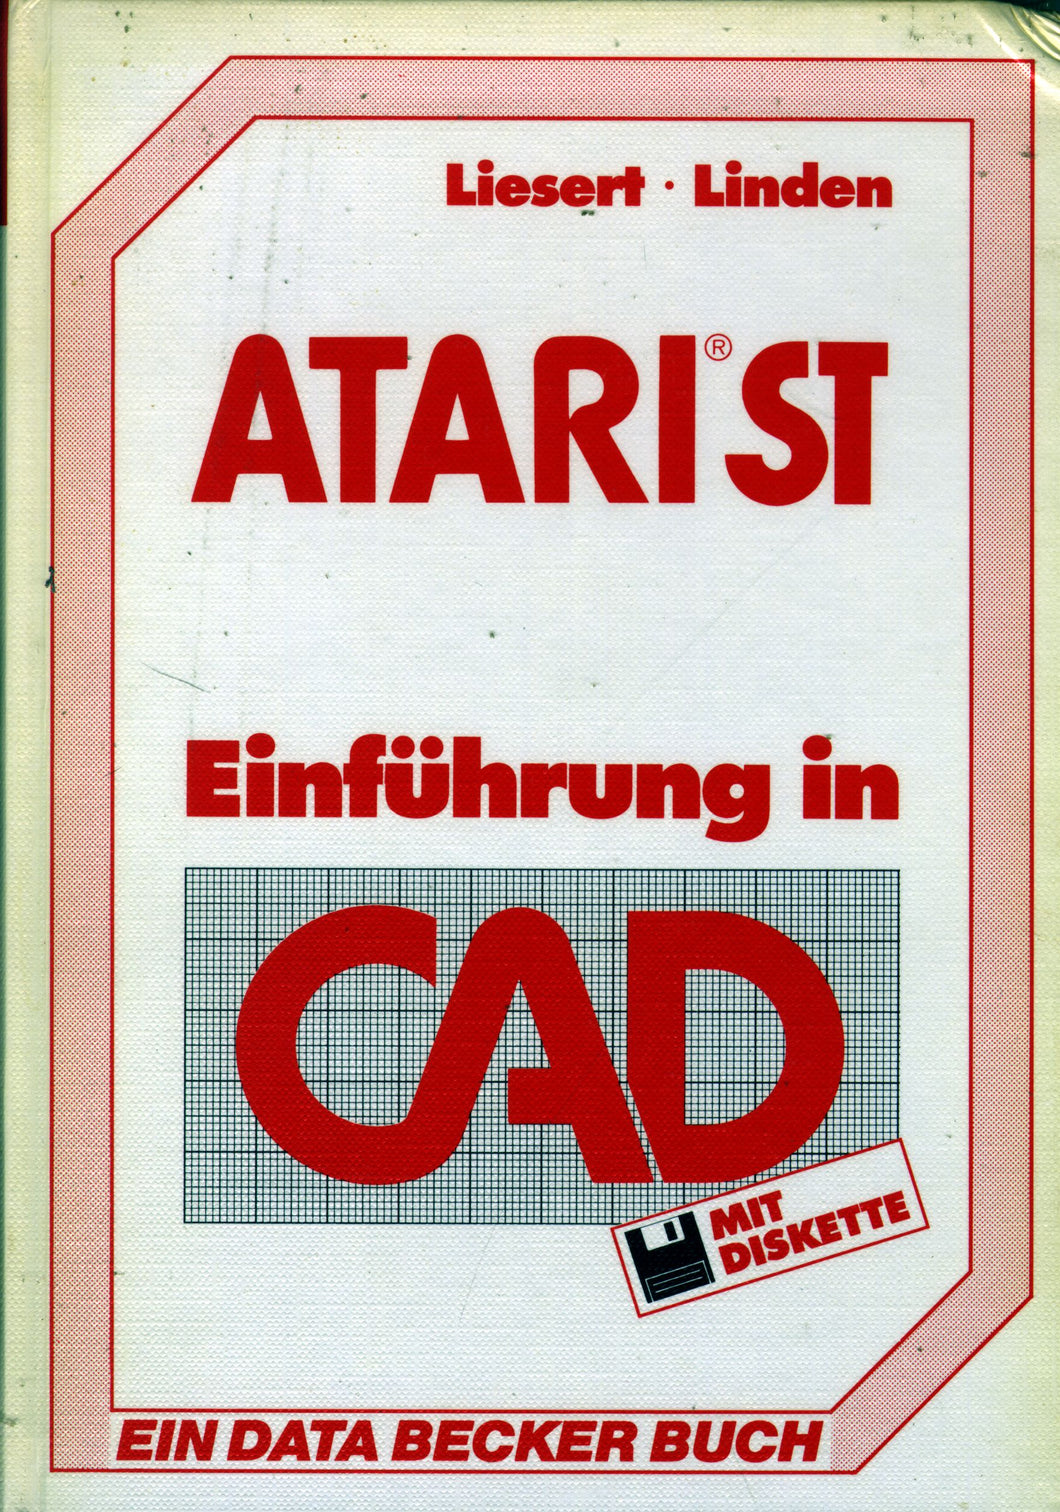 ATARI ST Einführung in CAD Vorderseite